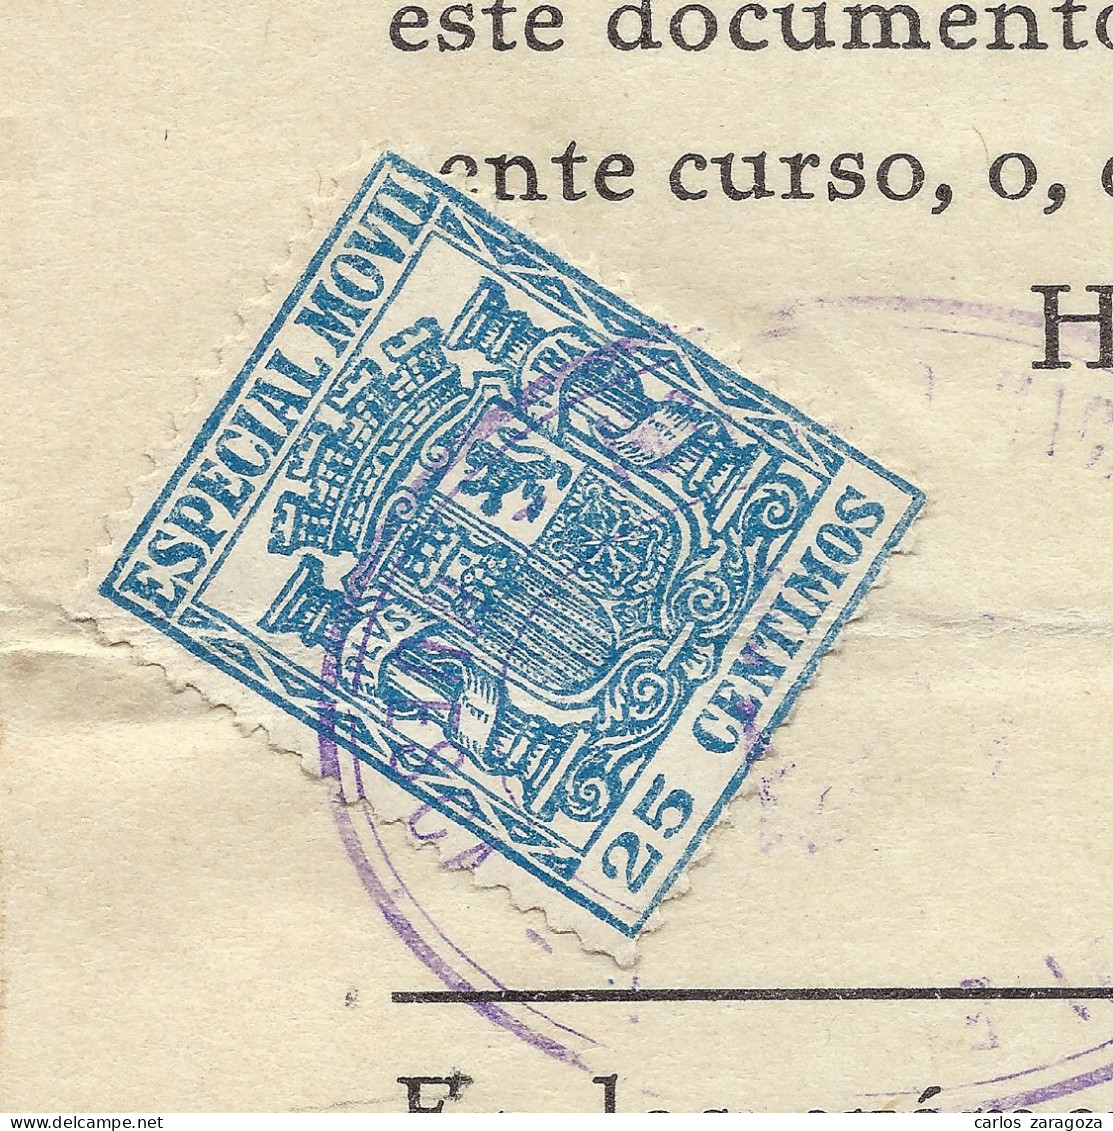 ESPAÑA 1933 República — Timbre Fiscal ESPECIAL MOVIL 25 Cts. Matrícula Enseñanza - Steuermarken